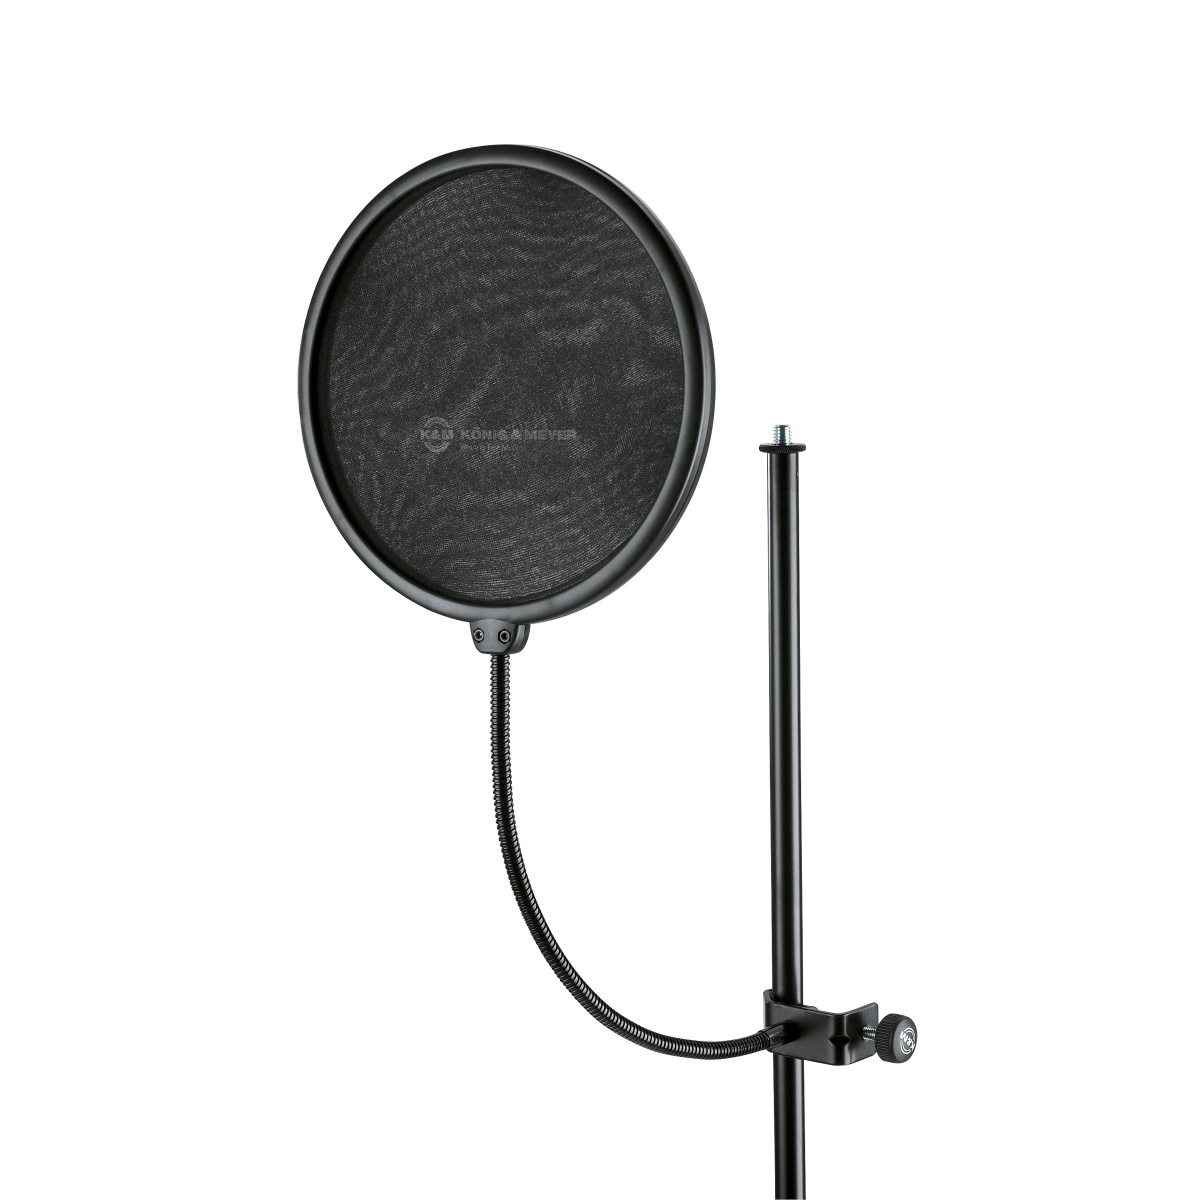 Аксессуары для микрофонов K&M 23966-000-55 стойка пантограф st 3621 для микрофона с усиленной струбциной держателем паук